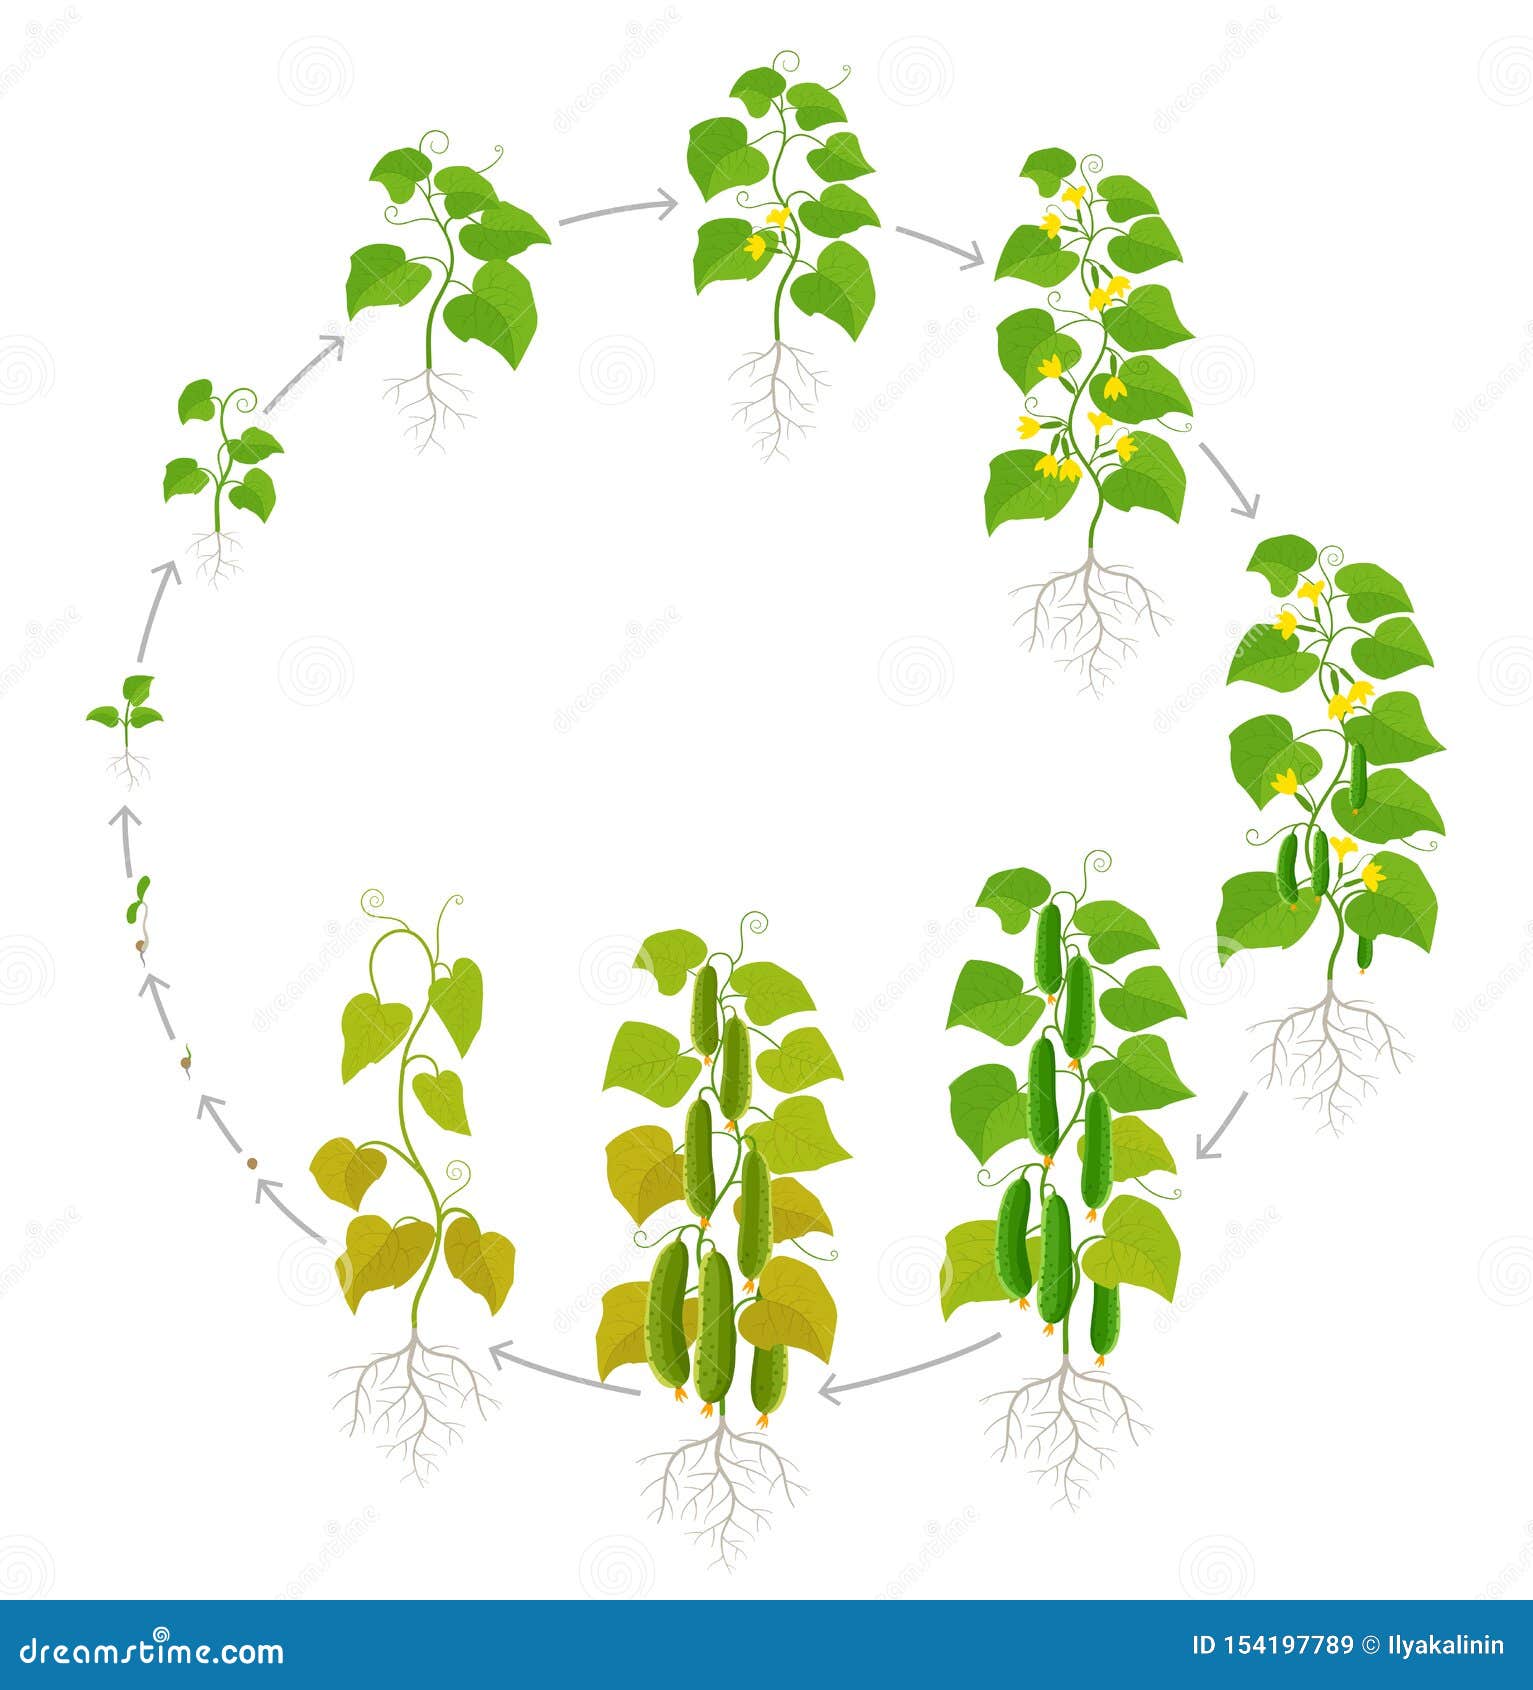 Жизненный цикл овощных растений по маркову. Циклы роста огурцов. Жизненный цикл роста огурца. Стадии роста огурцов. Цикл роста огурцов для дошкольников.